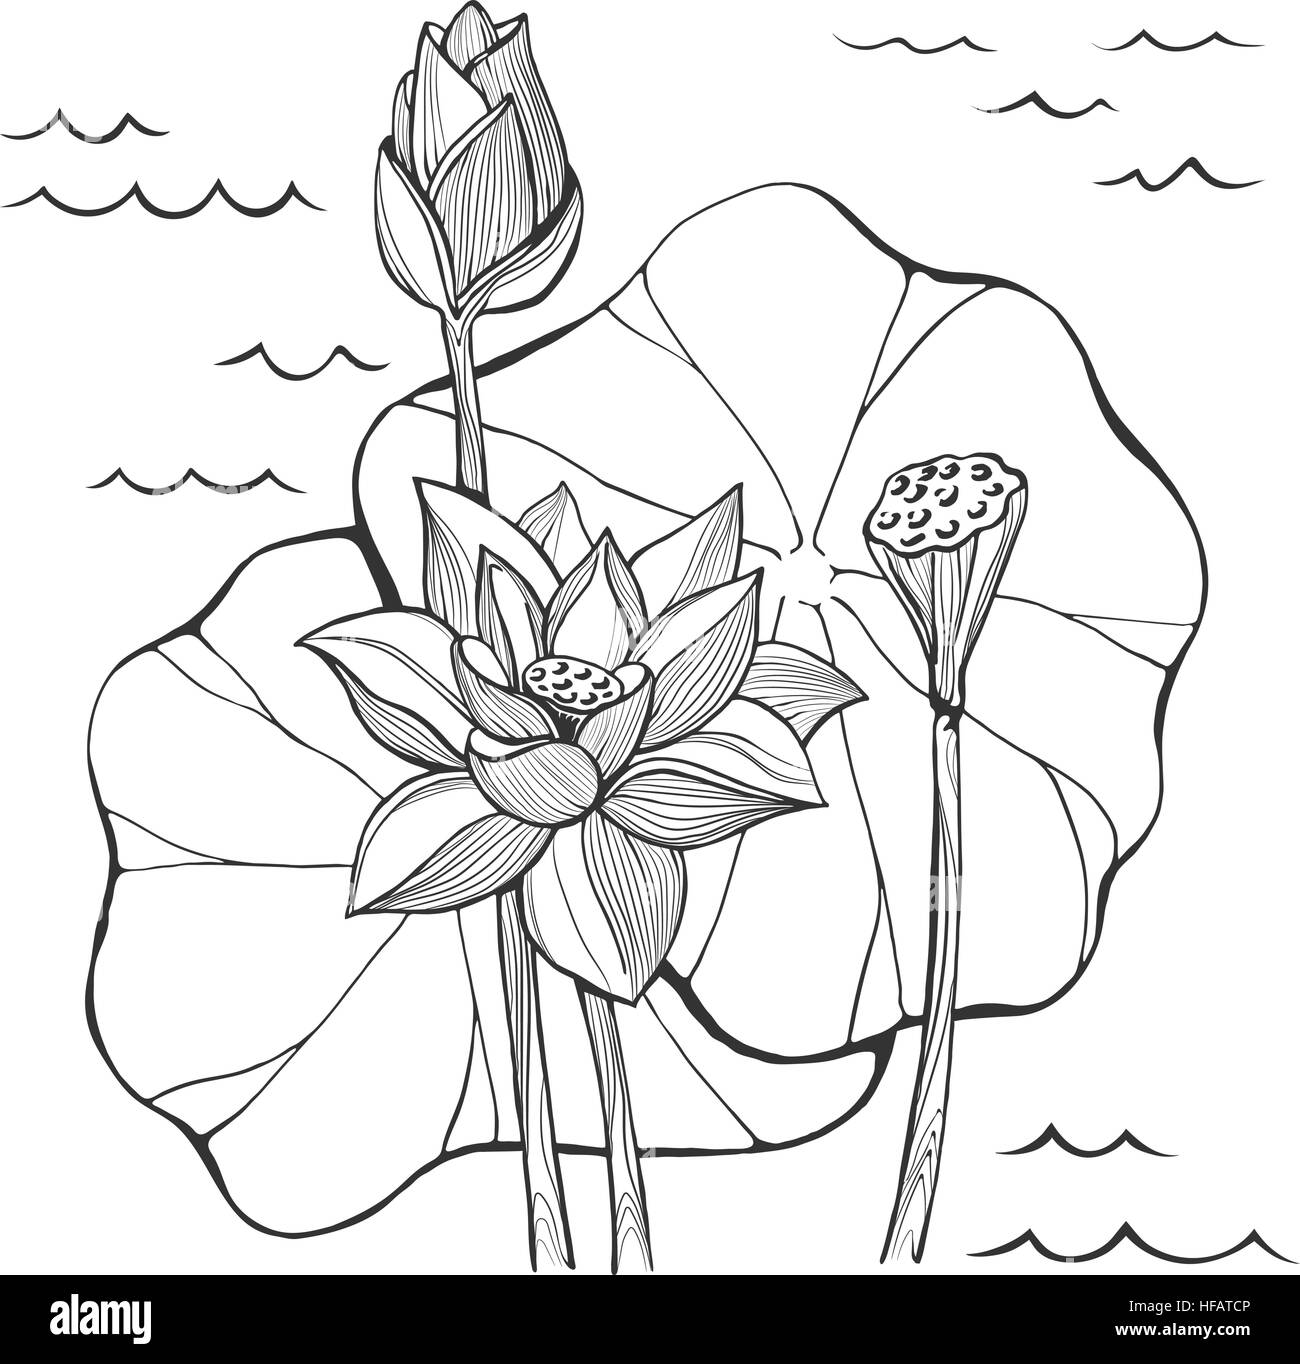 Vektor zu skizzieren, Lotus Blumen Knospe und Samen Stock Vektor